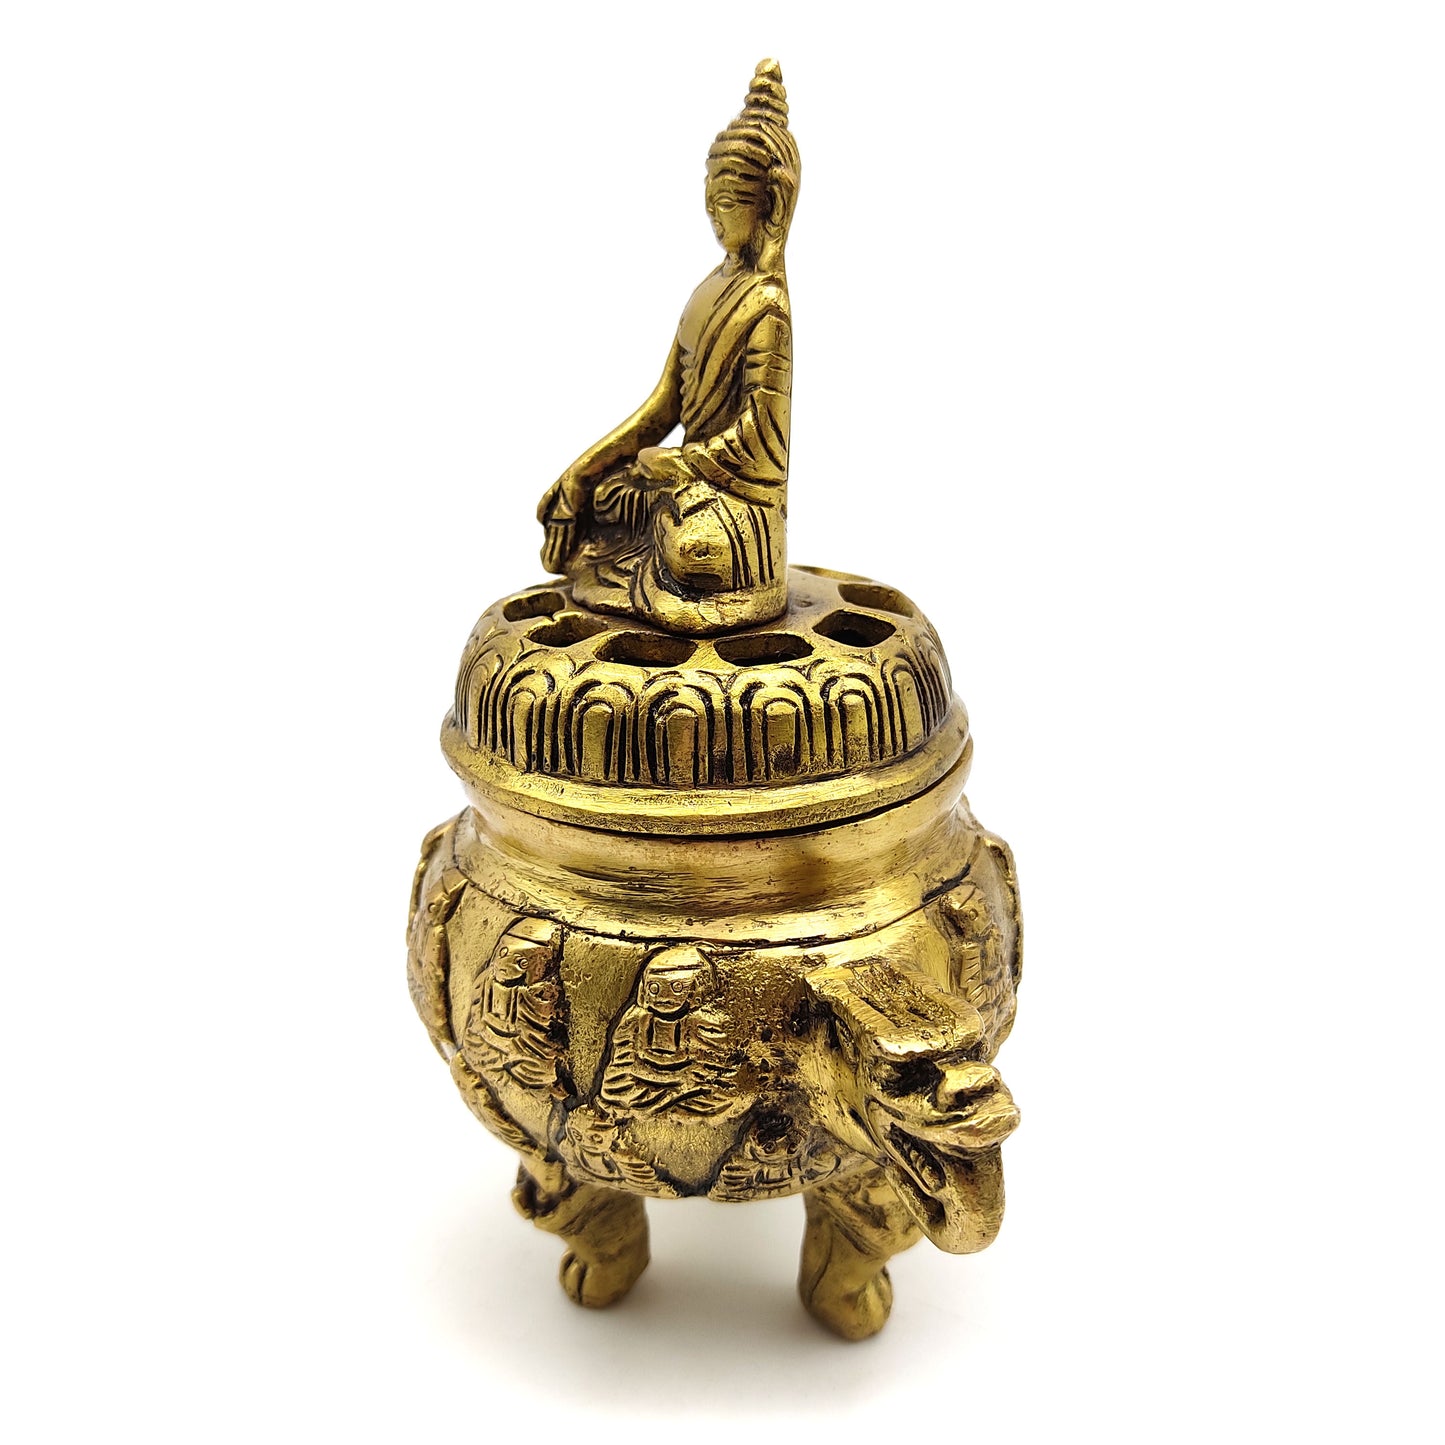 Tibetan Buddha Censer Burner with Lid Charcoal Incense Sage Decorative Burner 6"